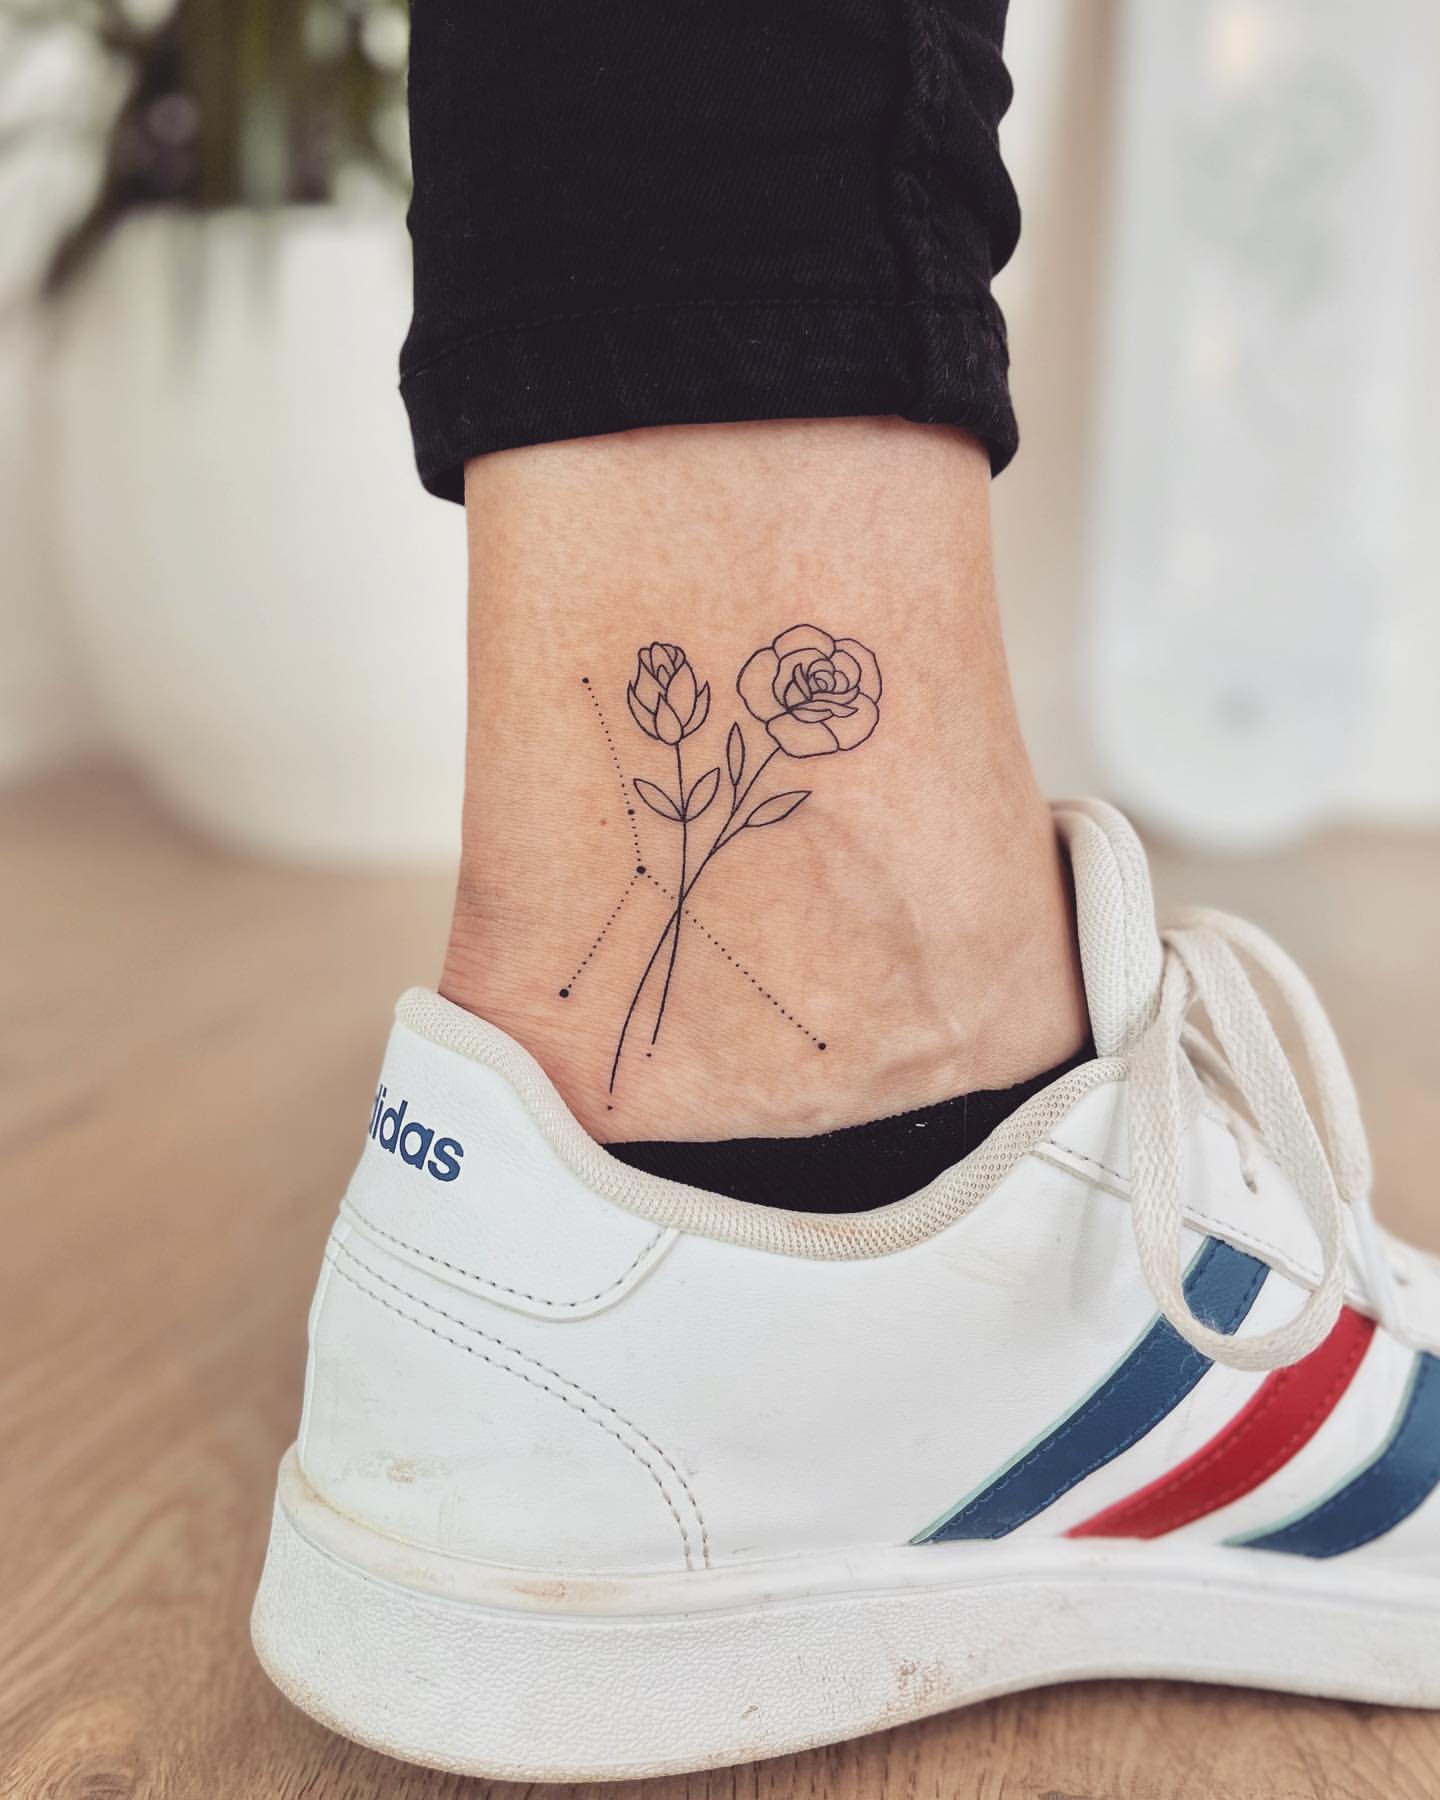 Small Flower Tattoo Ideas 17